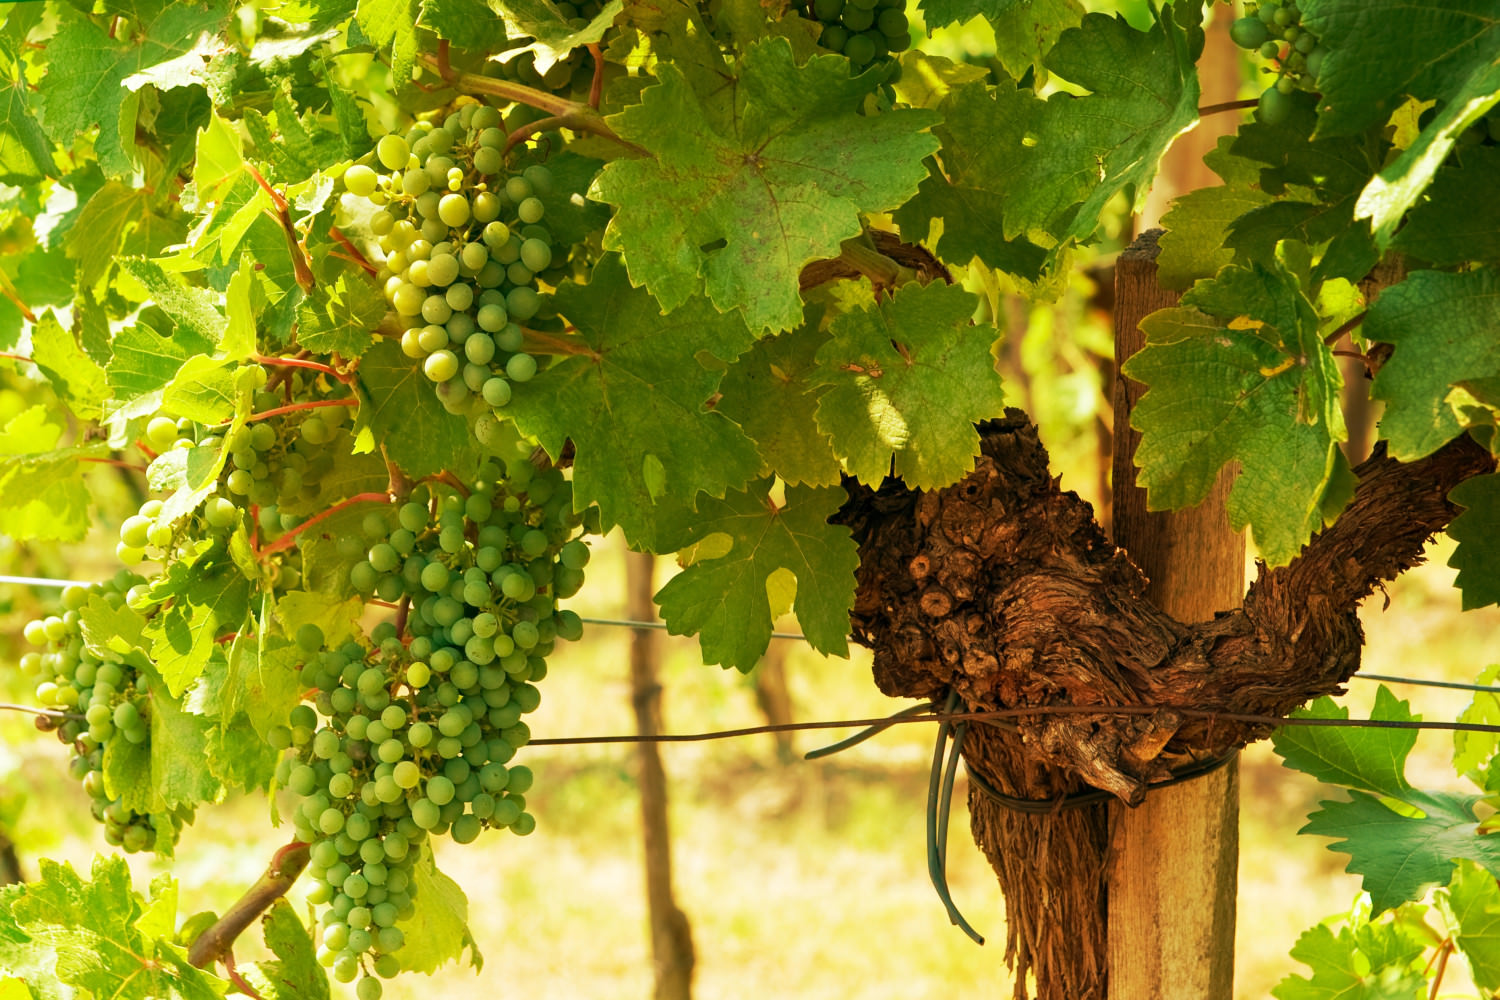 viennese,green,grapes,wine,yard,,vienna,,austria